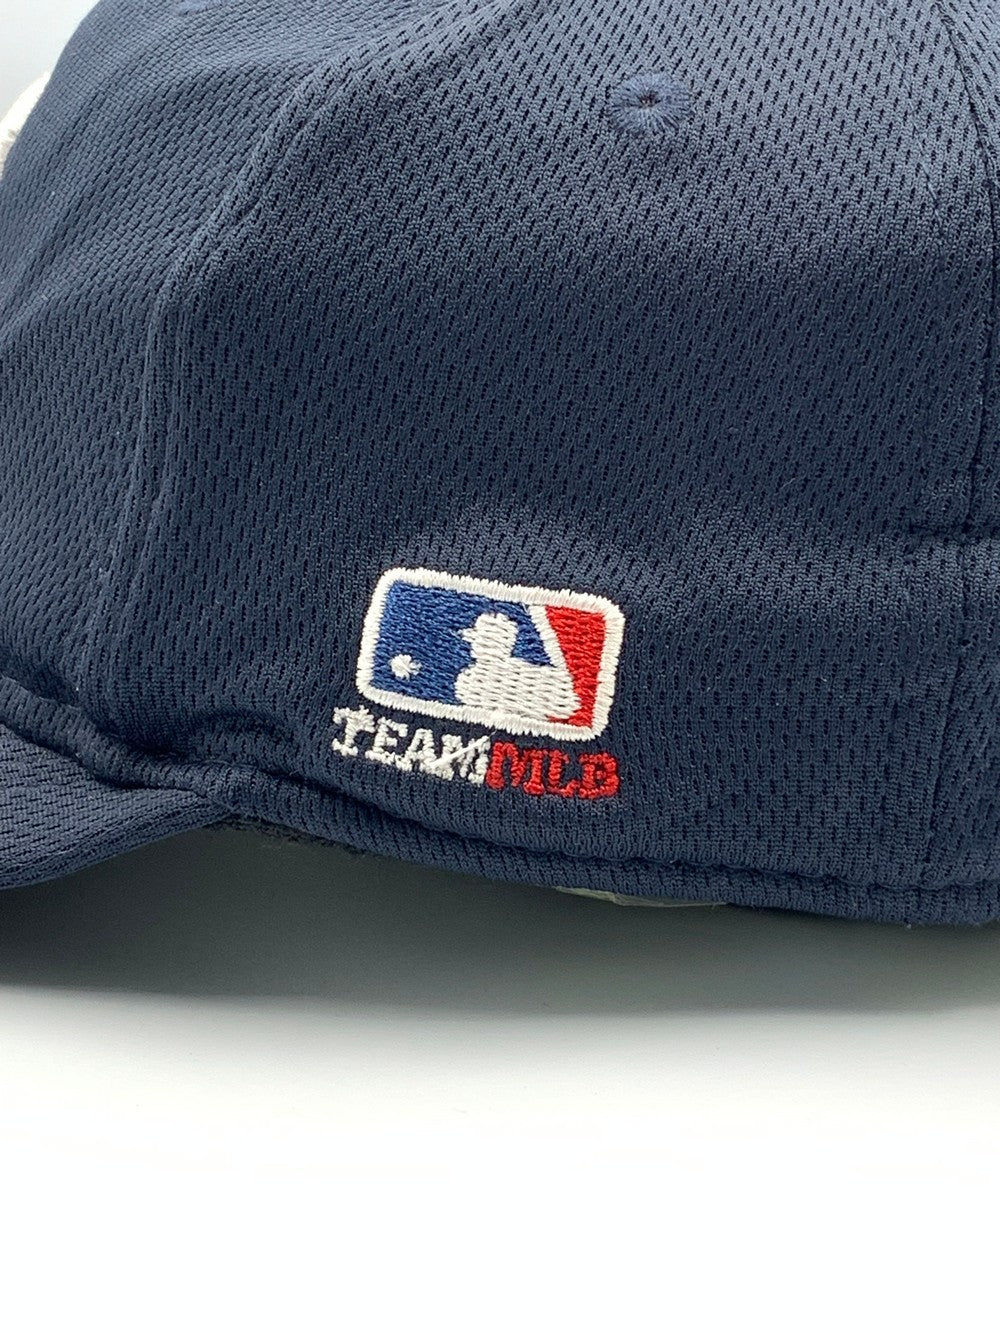 OC Sports Branded Original Branded Caps For Men